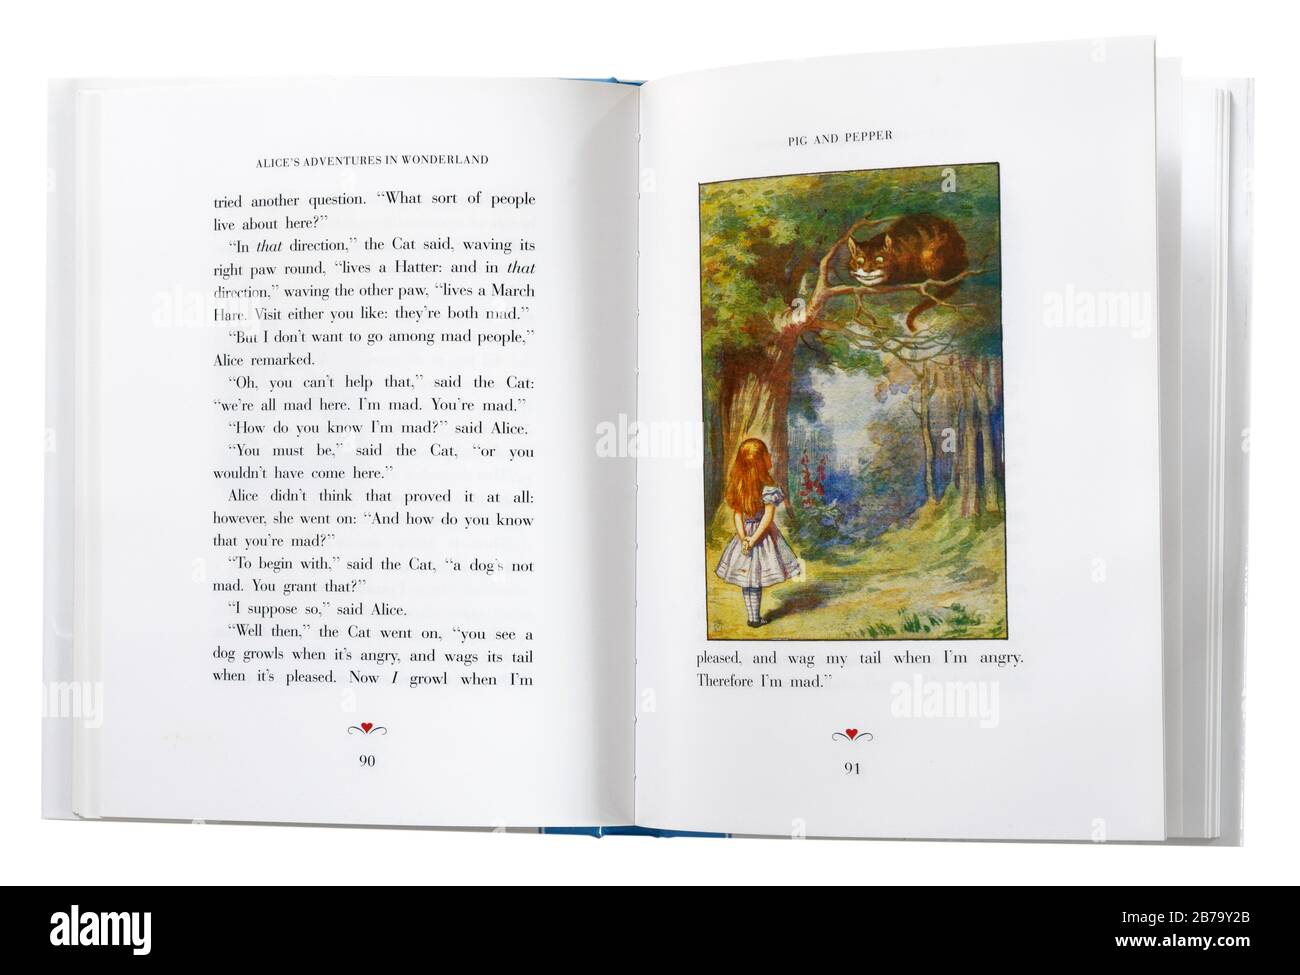 Alice im Wunderland von Lewis Carroll, offen bei einer Illustration von Alice und der Cheshire Cat. Stockfoto